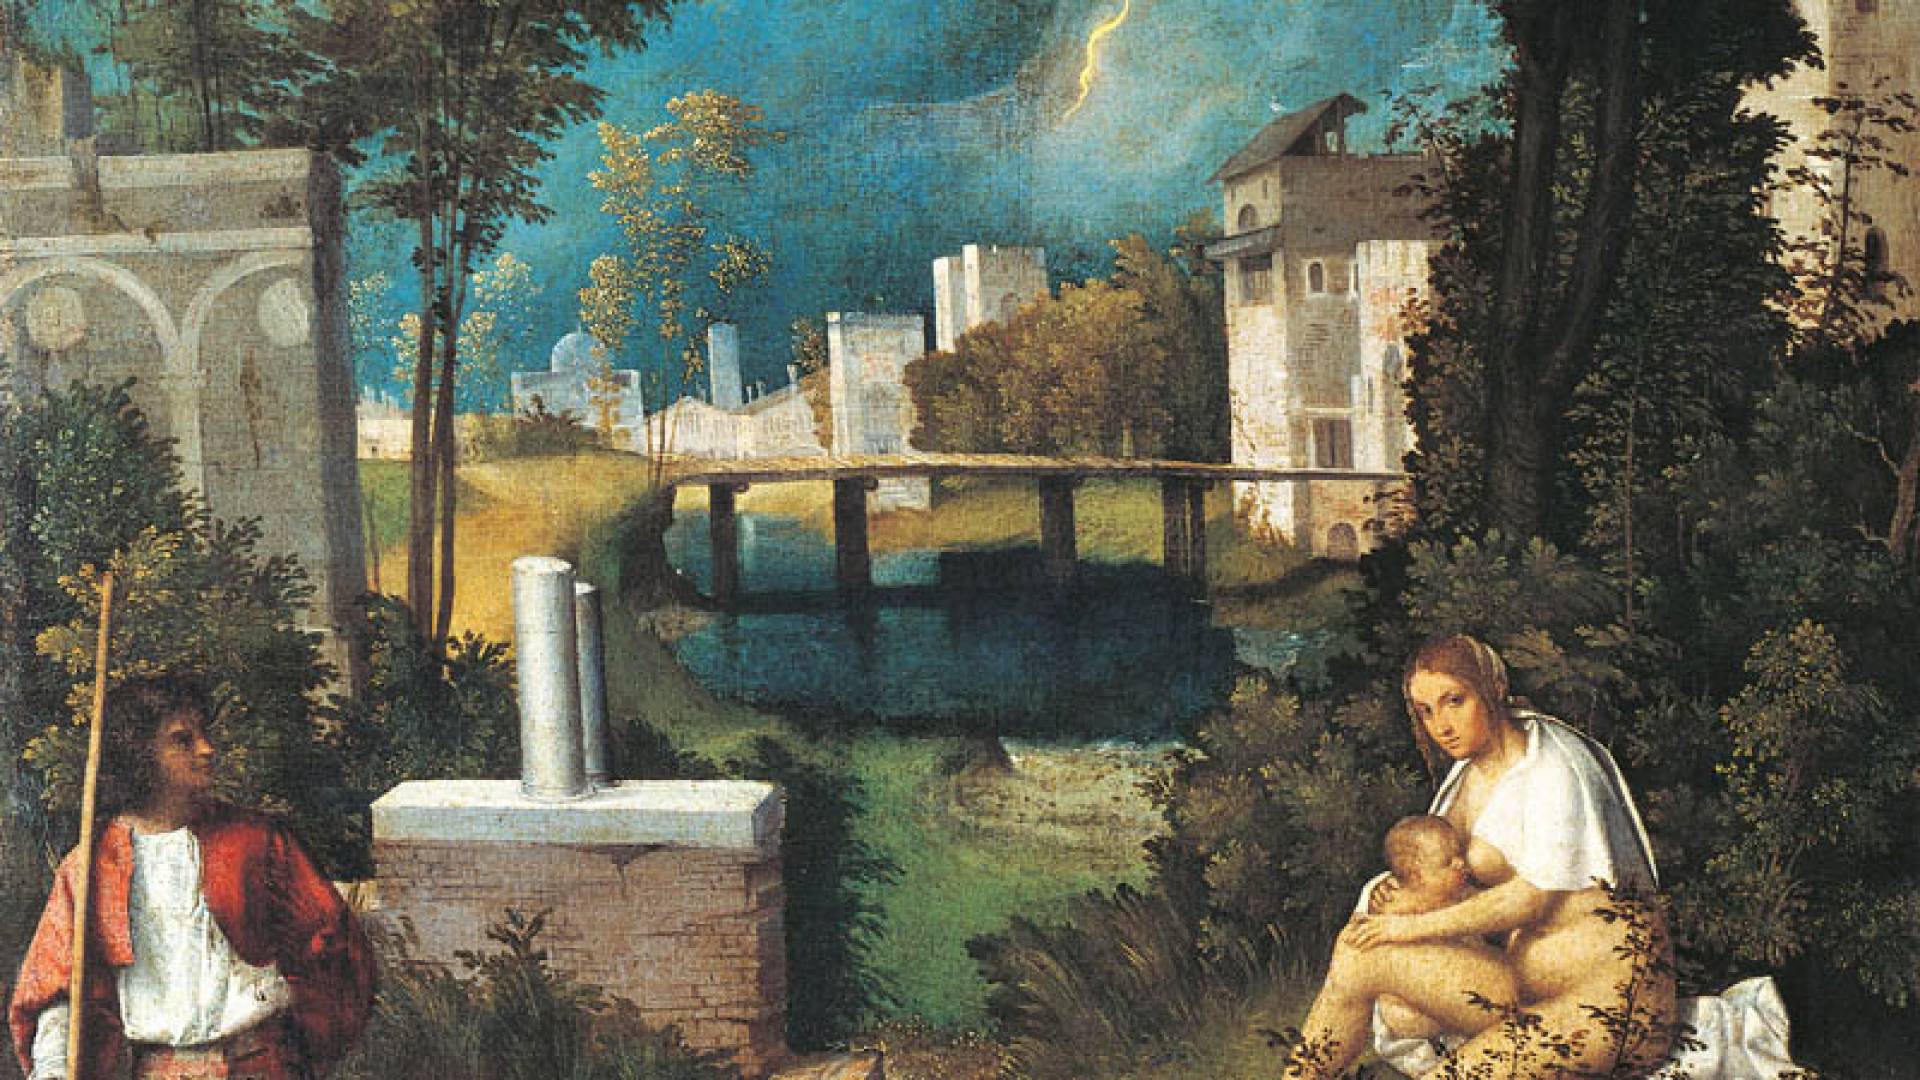 ACCADEMIA GALLERY, The Tempest - Giorgione